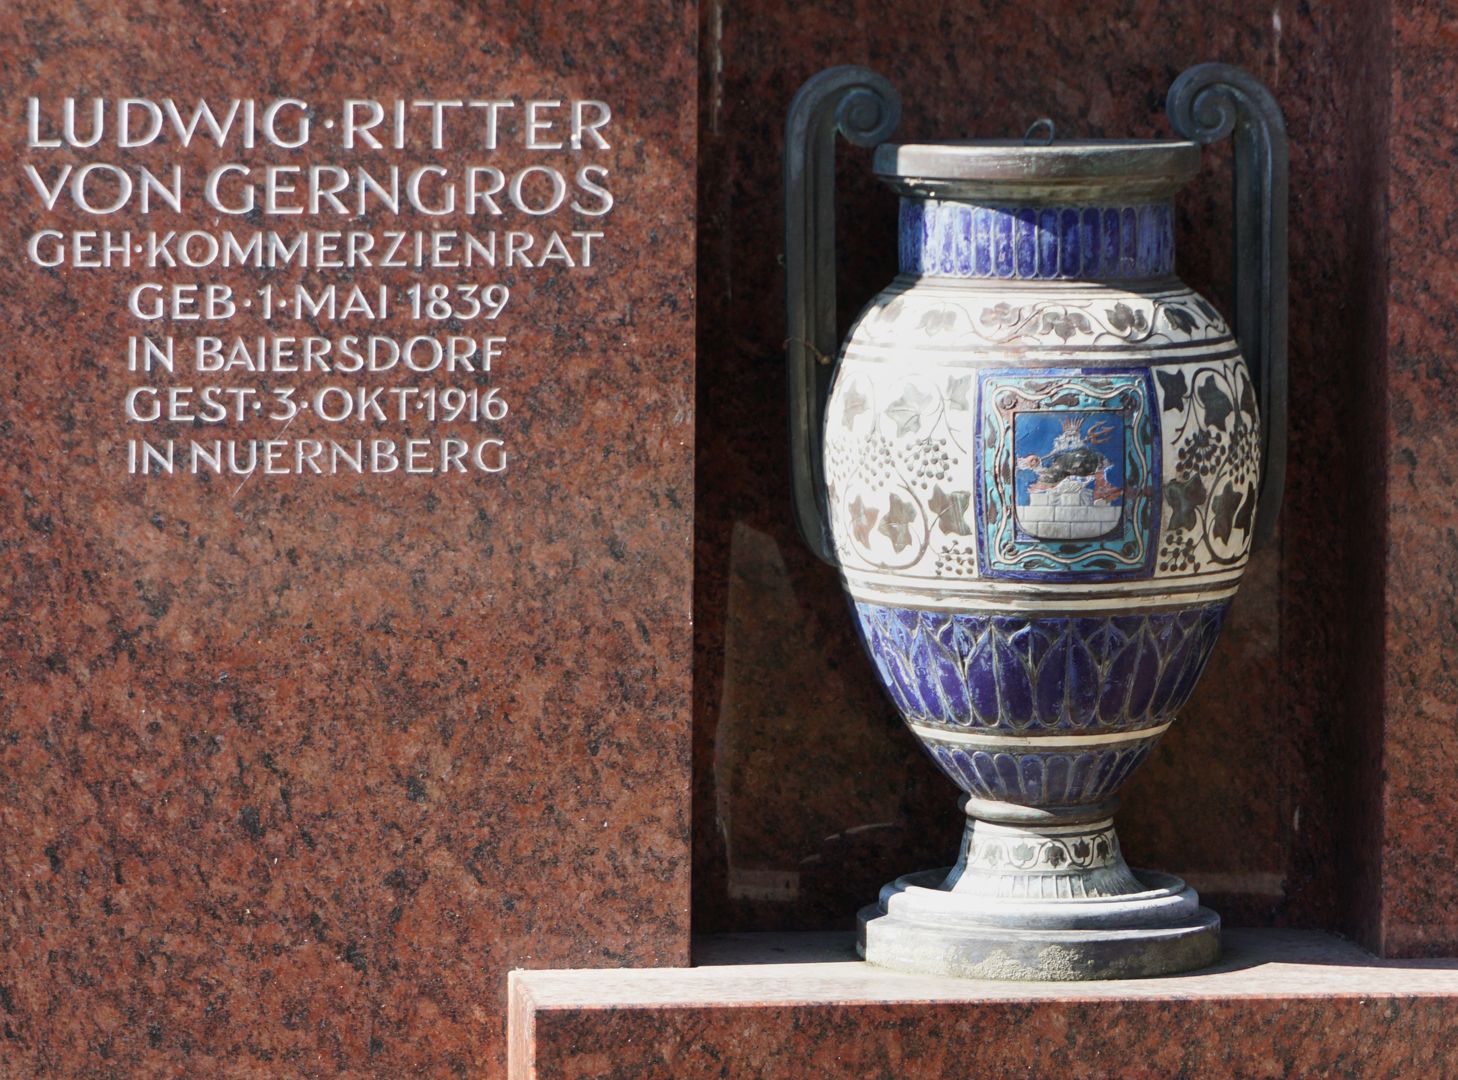 Ludwig Ritter von Gerngros / tomb Detail